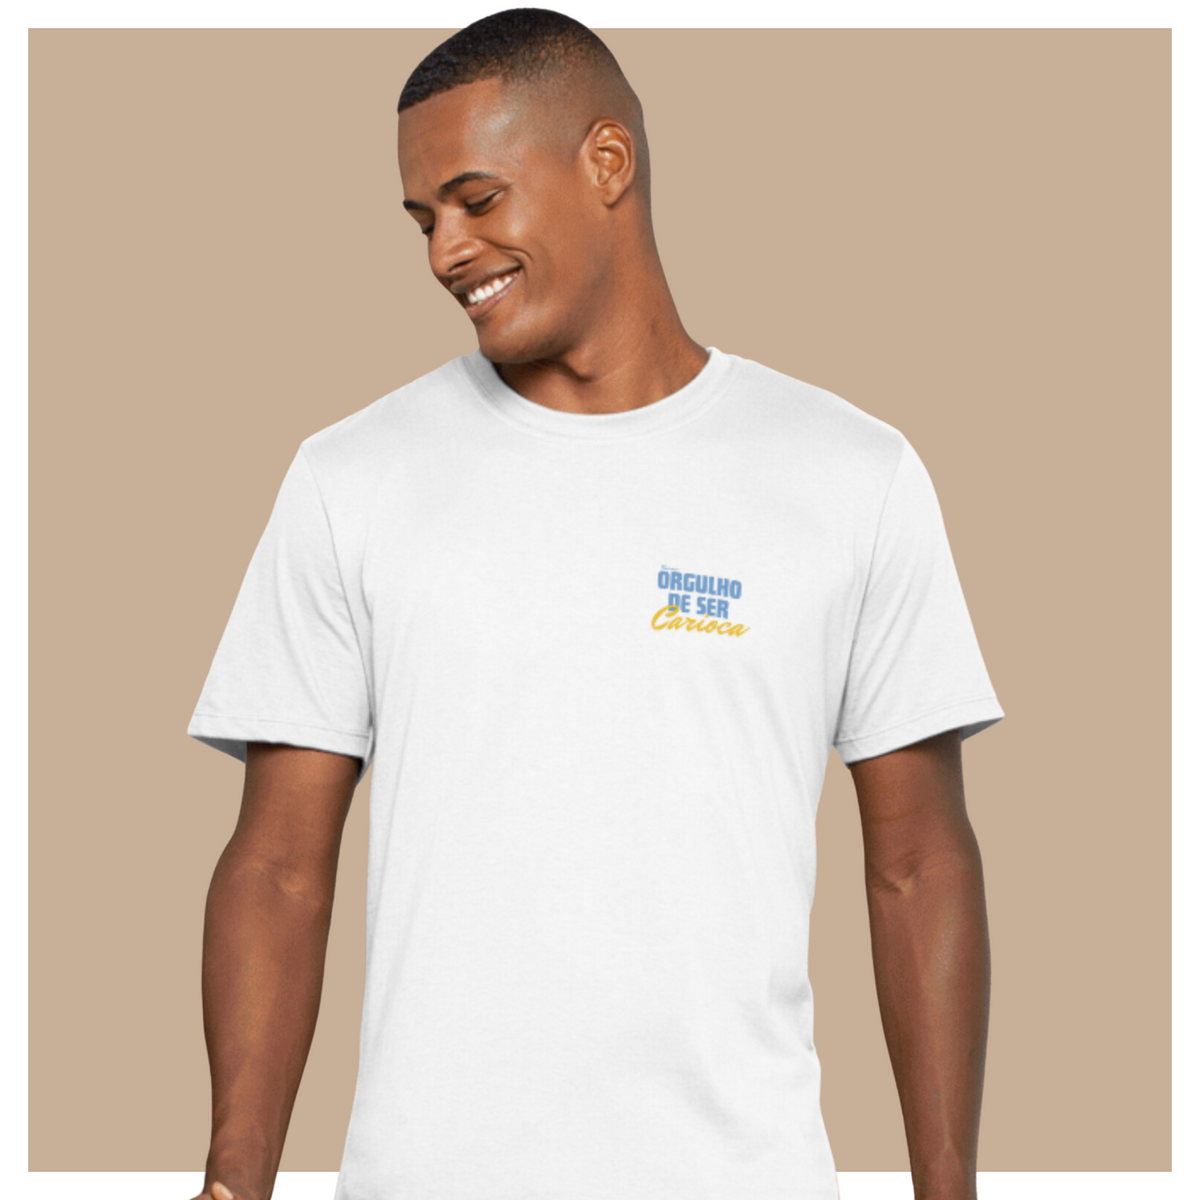 Nome do produto: T-Shirt Orgulho de ser Carioca Simple